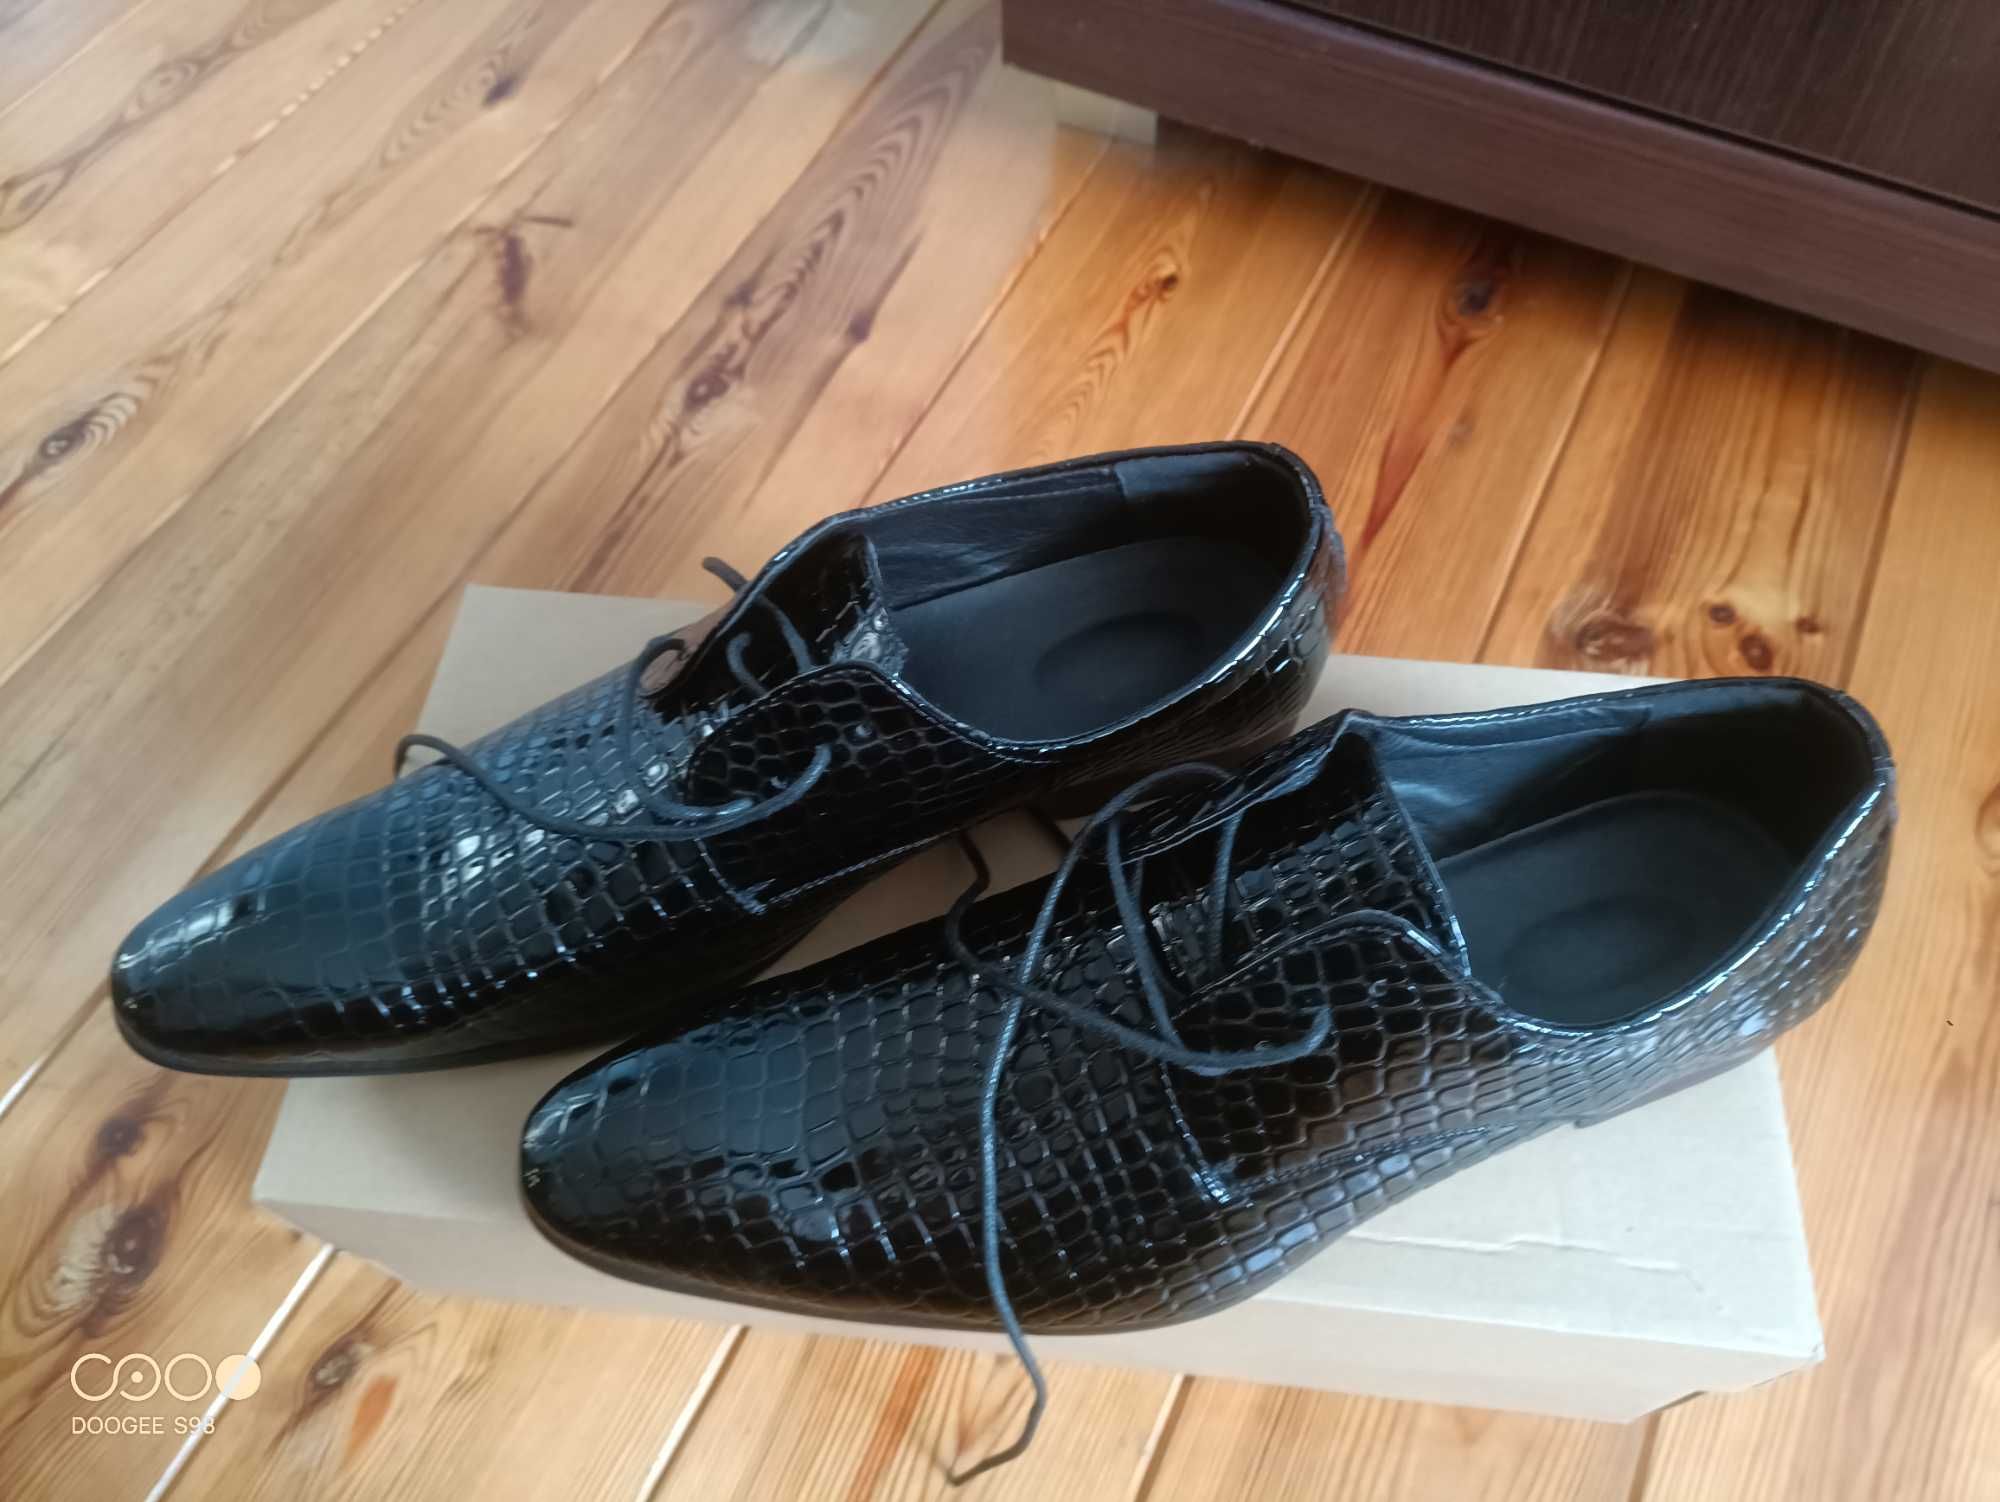 Skórzane buty z wytłoczonym wzorem aligatora, krokodyla.